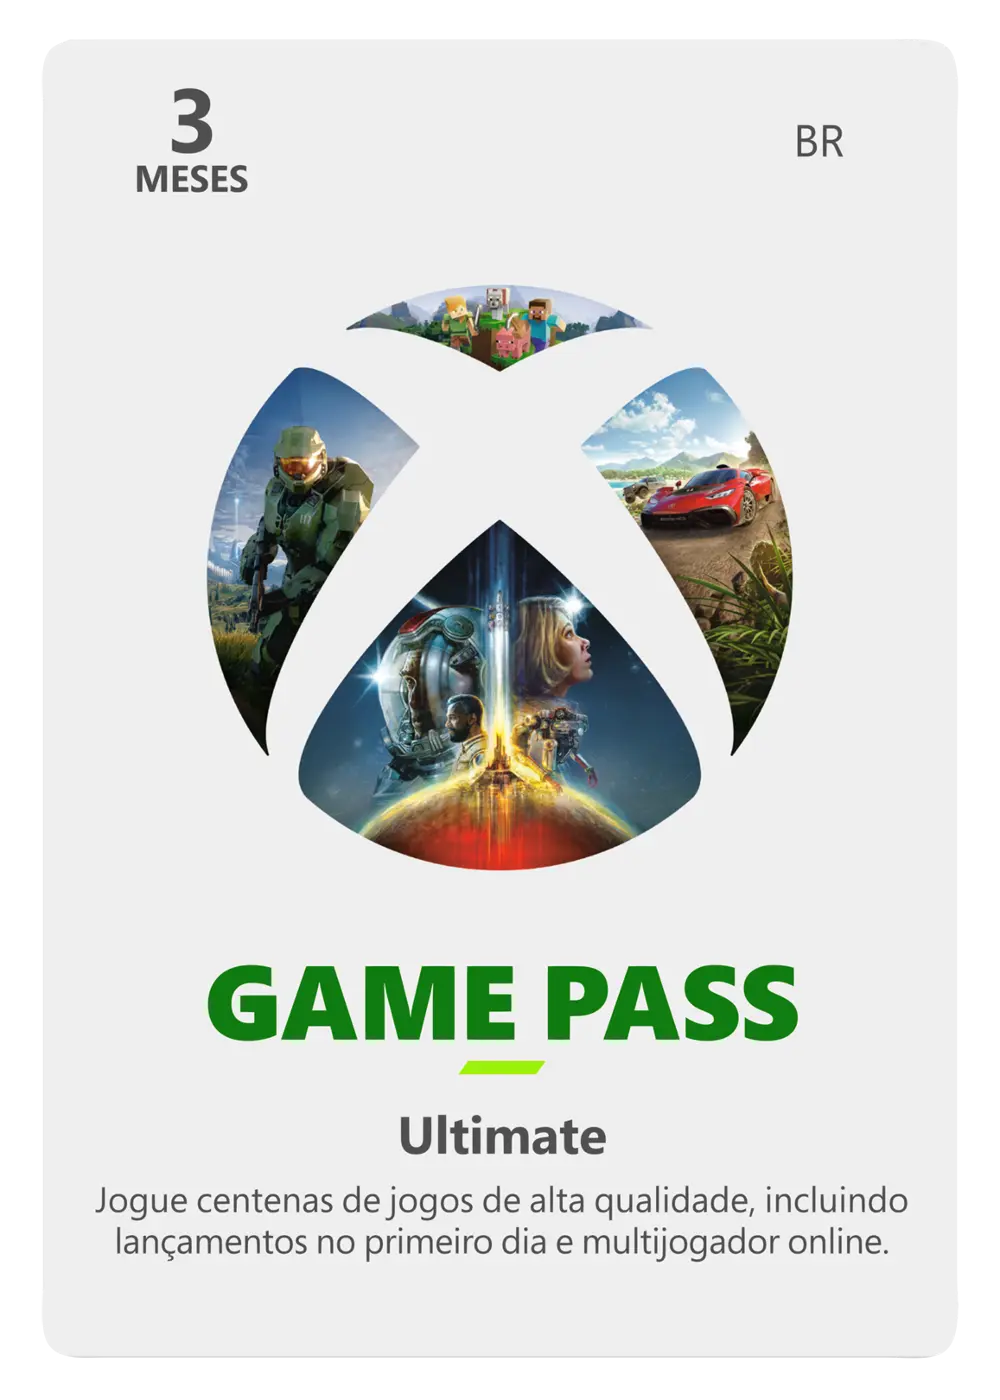 Xbox Game Pass Ultimate chega ao Brasil com Live Gold por R$ 39,99/mês –  Tecnoblog